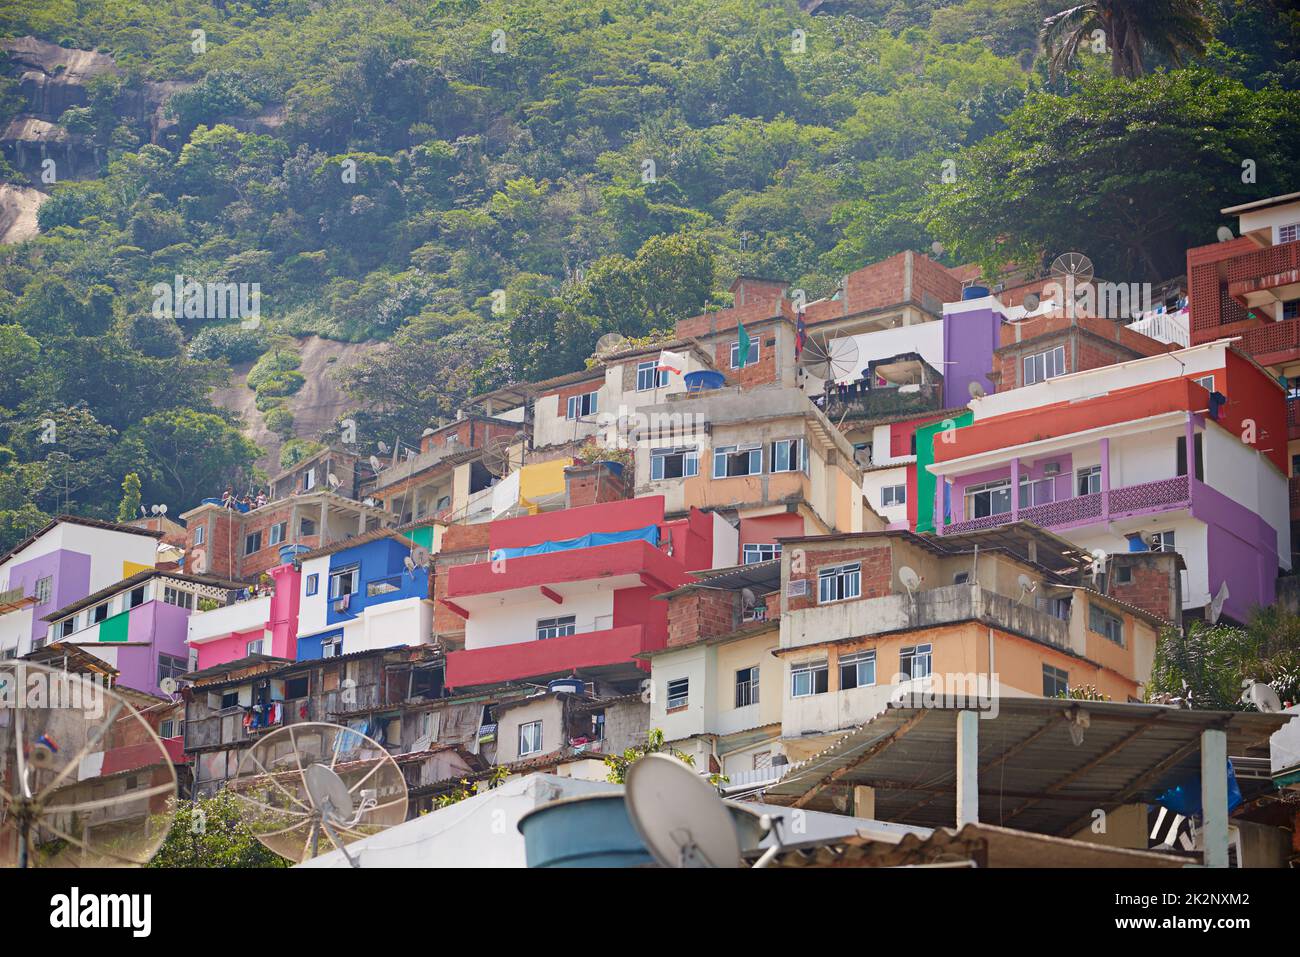 Mountainside housing. Shot of slums on a mountainside in Rio de Janeiro, Brazil. Stock Photo